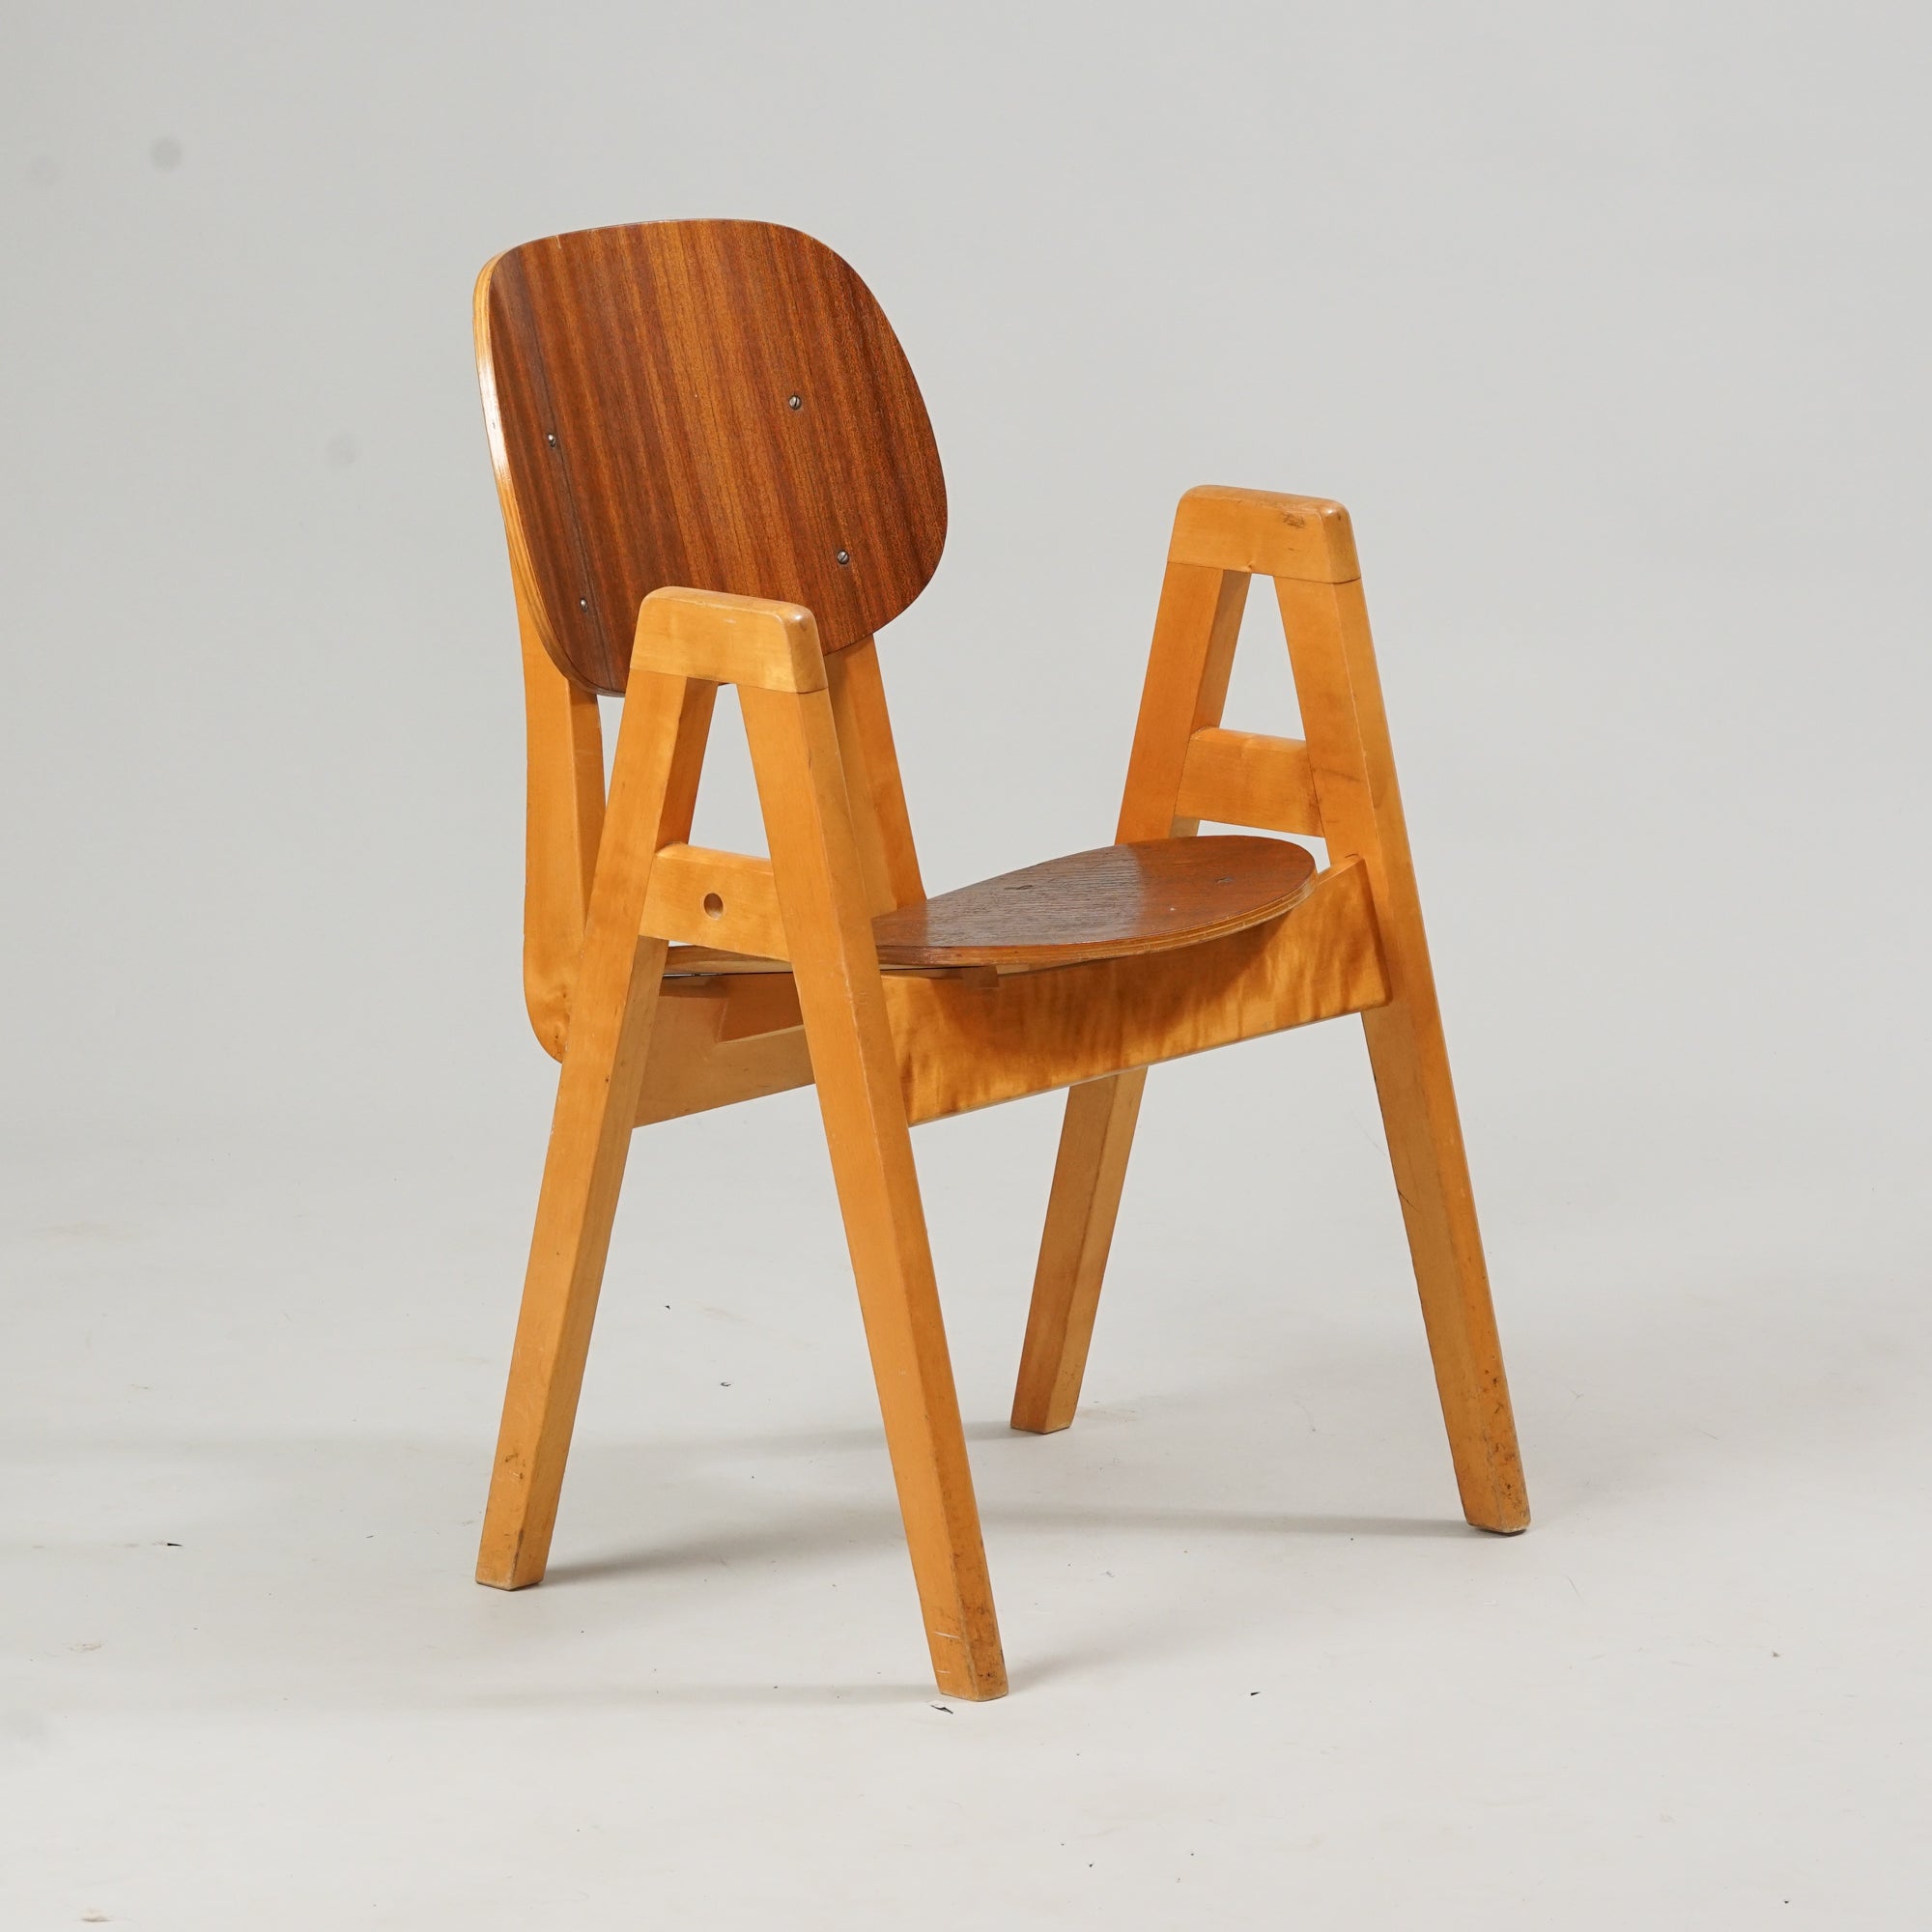 Puusta tehty tuoli, jossa tummempi selkänoja ja istuin. Käsinojat ovat "A"-muotoisia. 